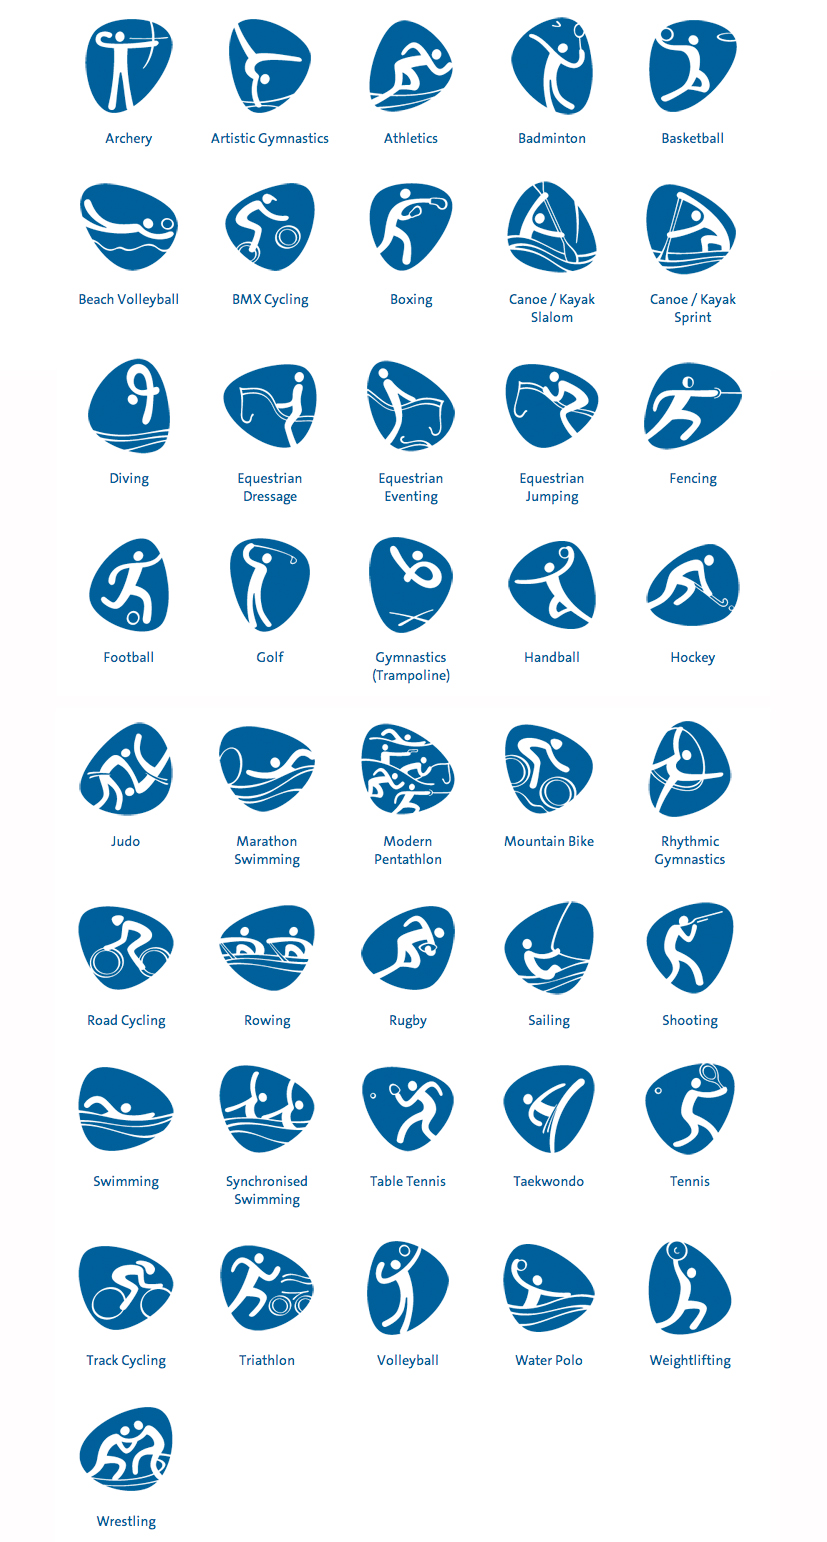 icone design olympiques Rio 2016